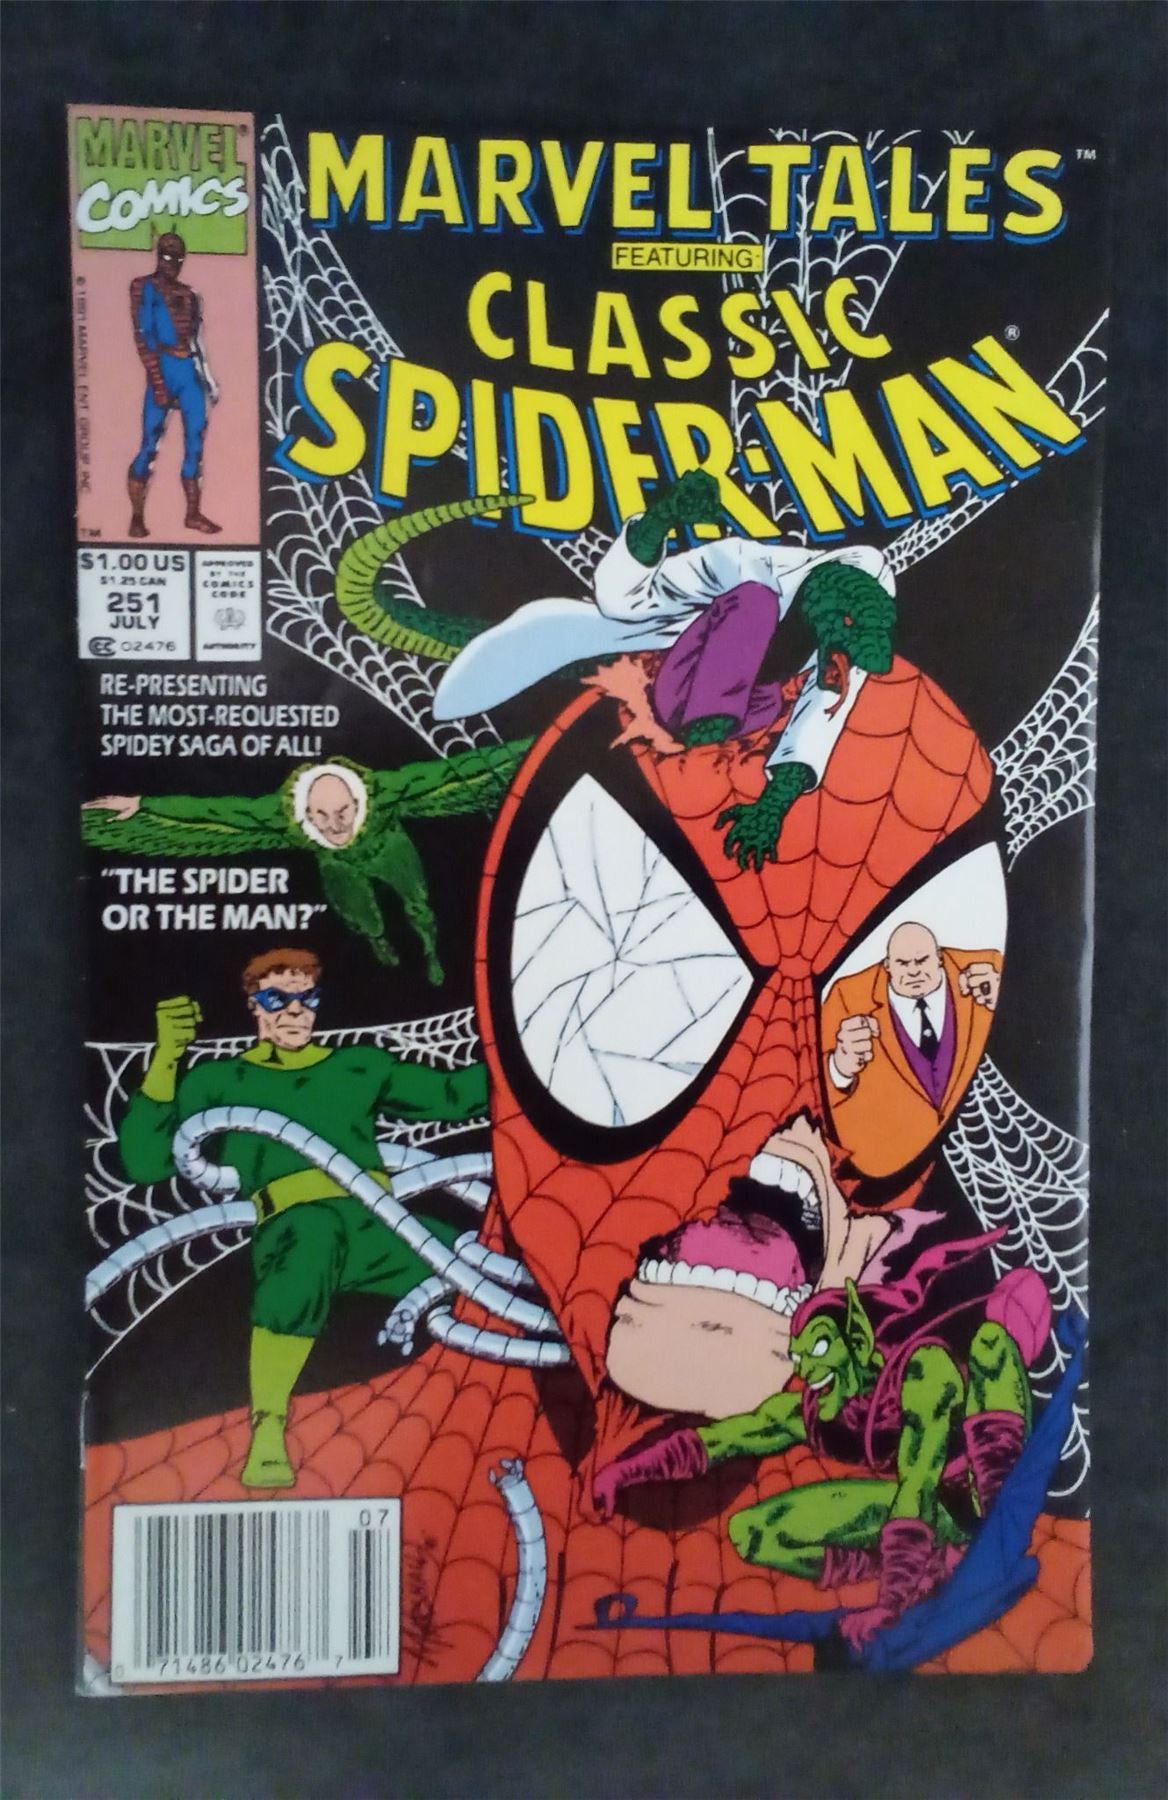 Marvel Tales #251 1991 marvel Comic Book